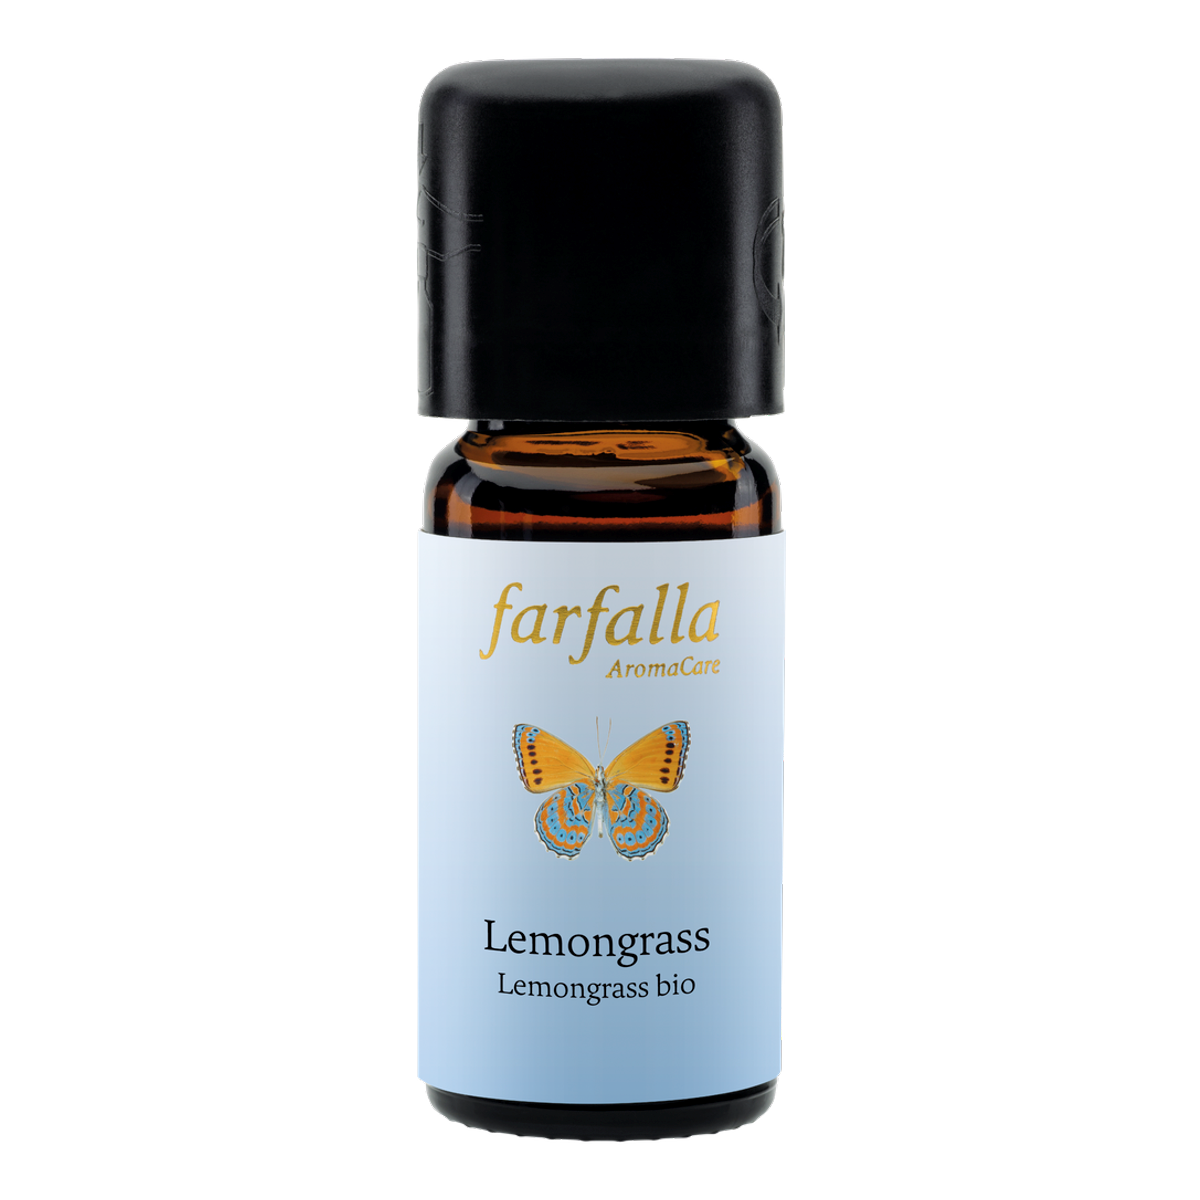 Farfalla Lemongrass bio Grand Cru, ätherisches Öl